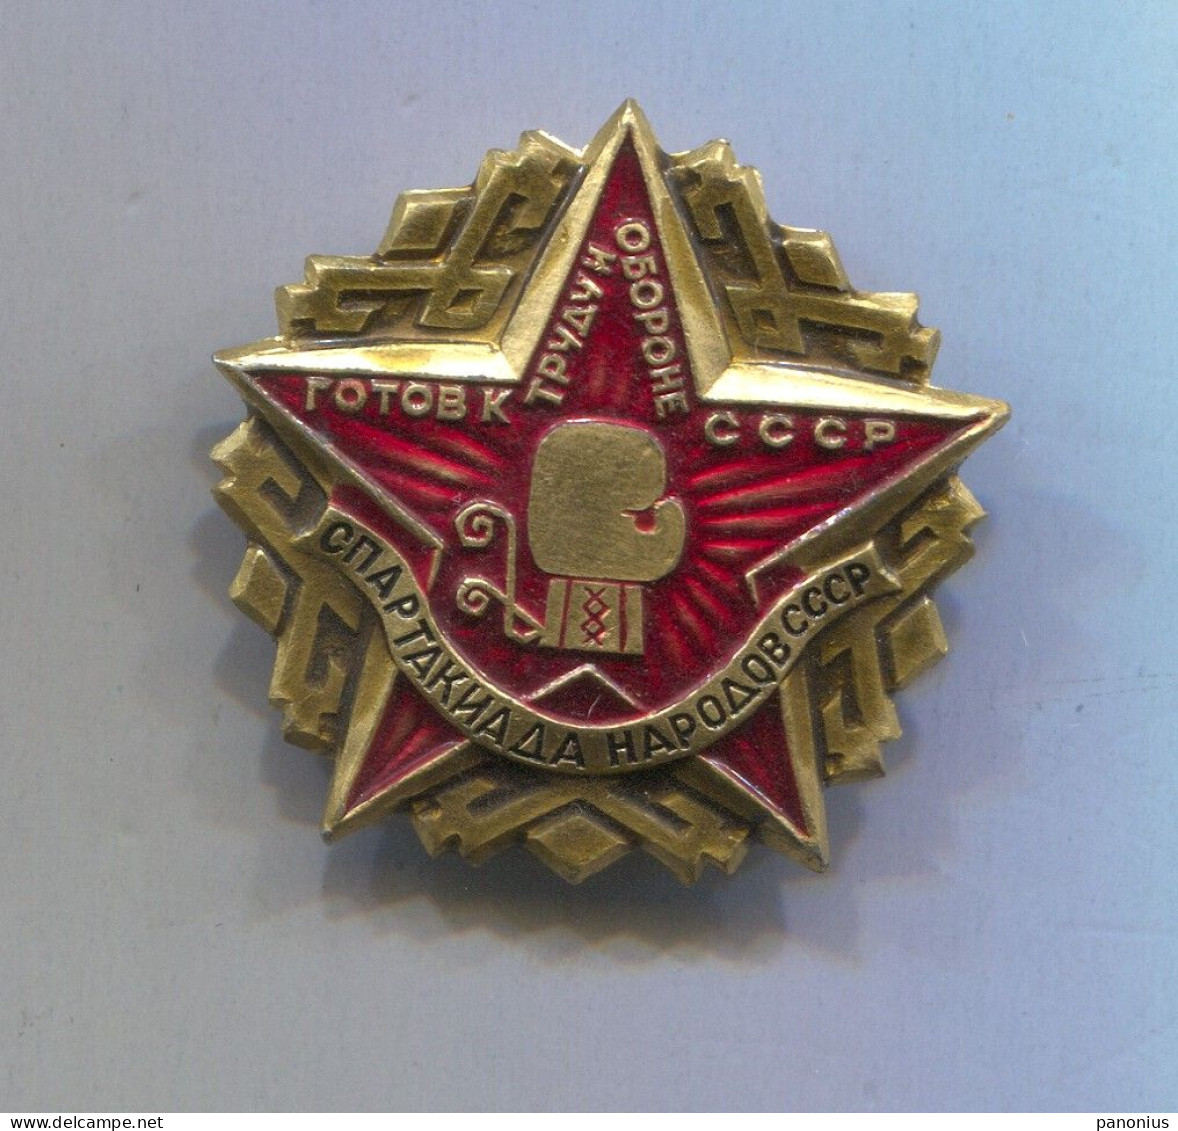 Boxing Box Boxen Pugilato - Spartakiada Russia USSR, Vintage Pin Badge Abzeichen - Boxen